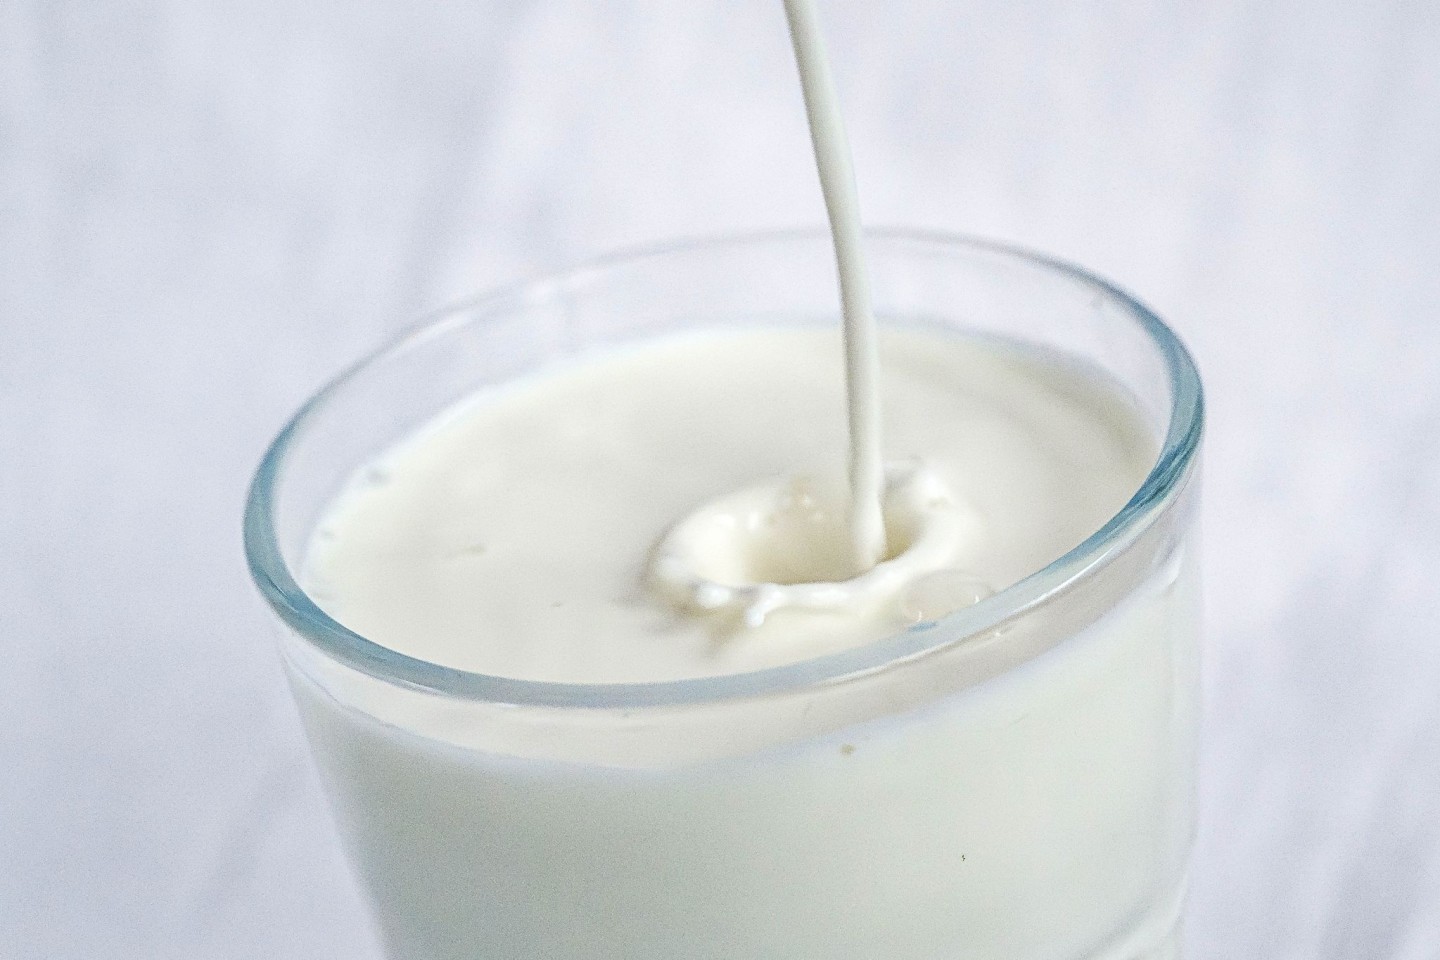 In den USA sollte derzeit lediglich pasteurisierte Milch konsumiert werden.